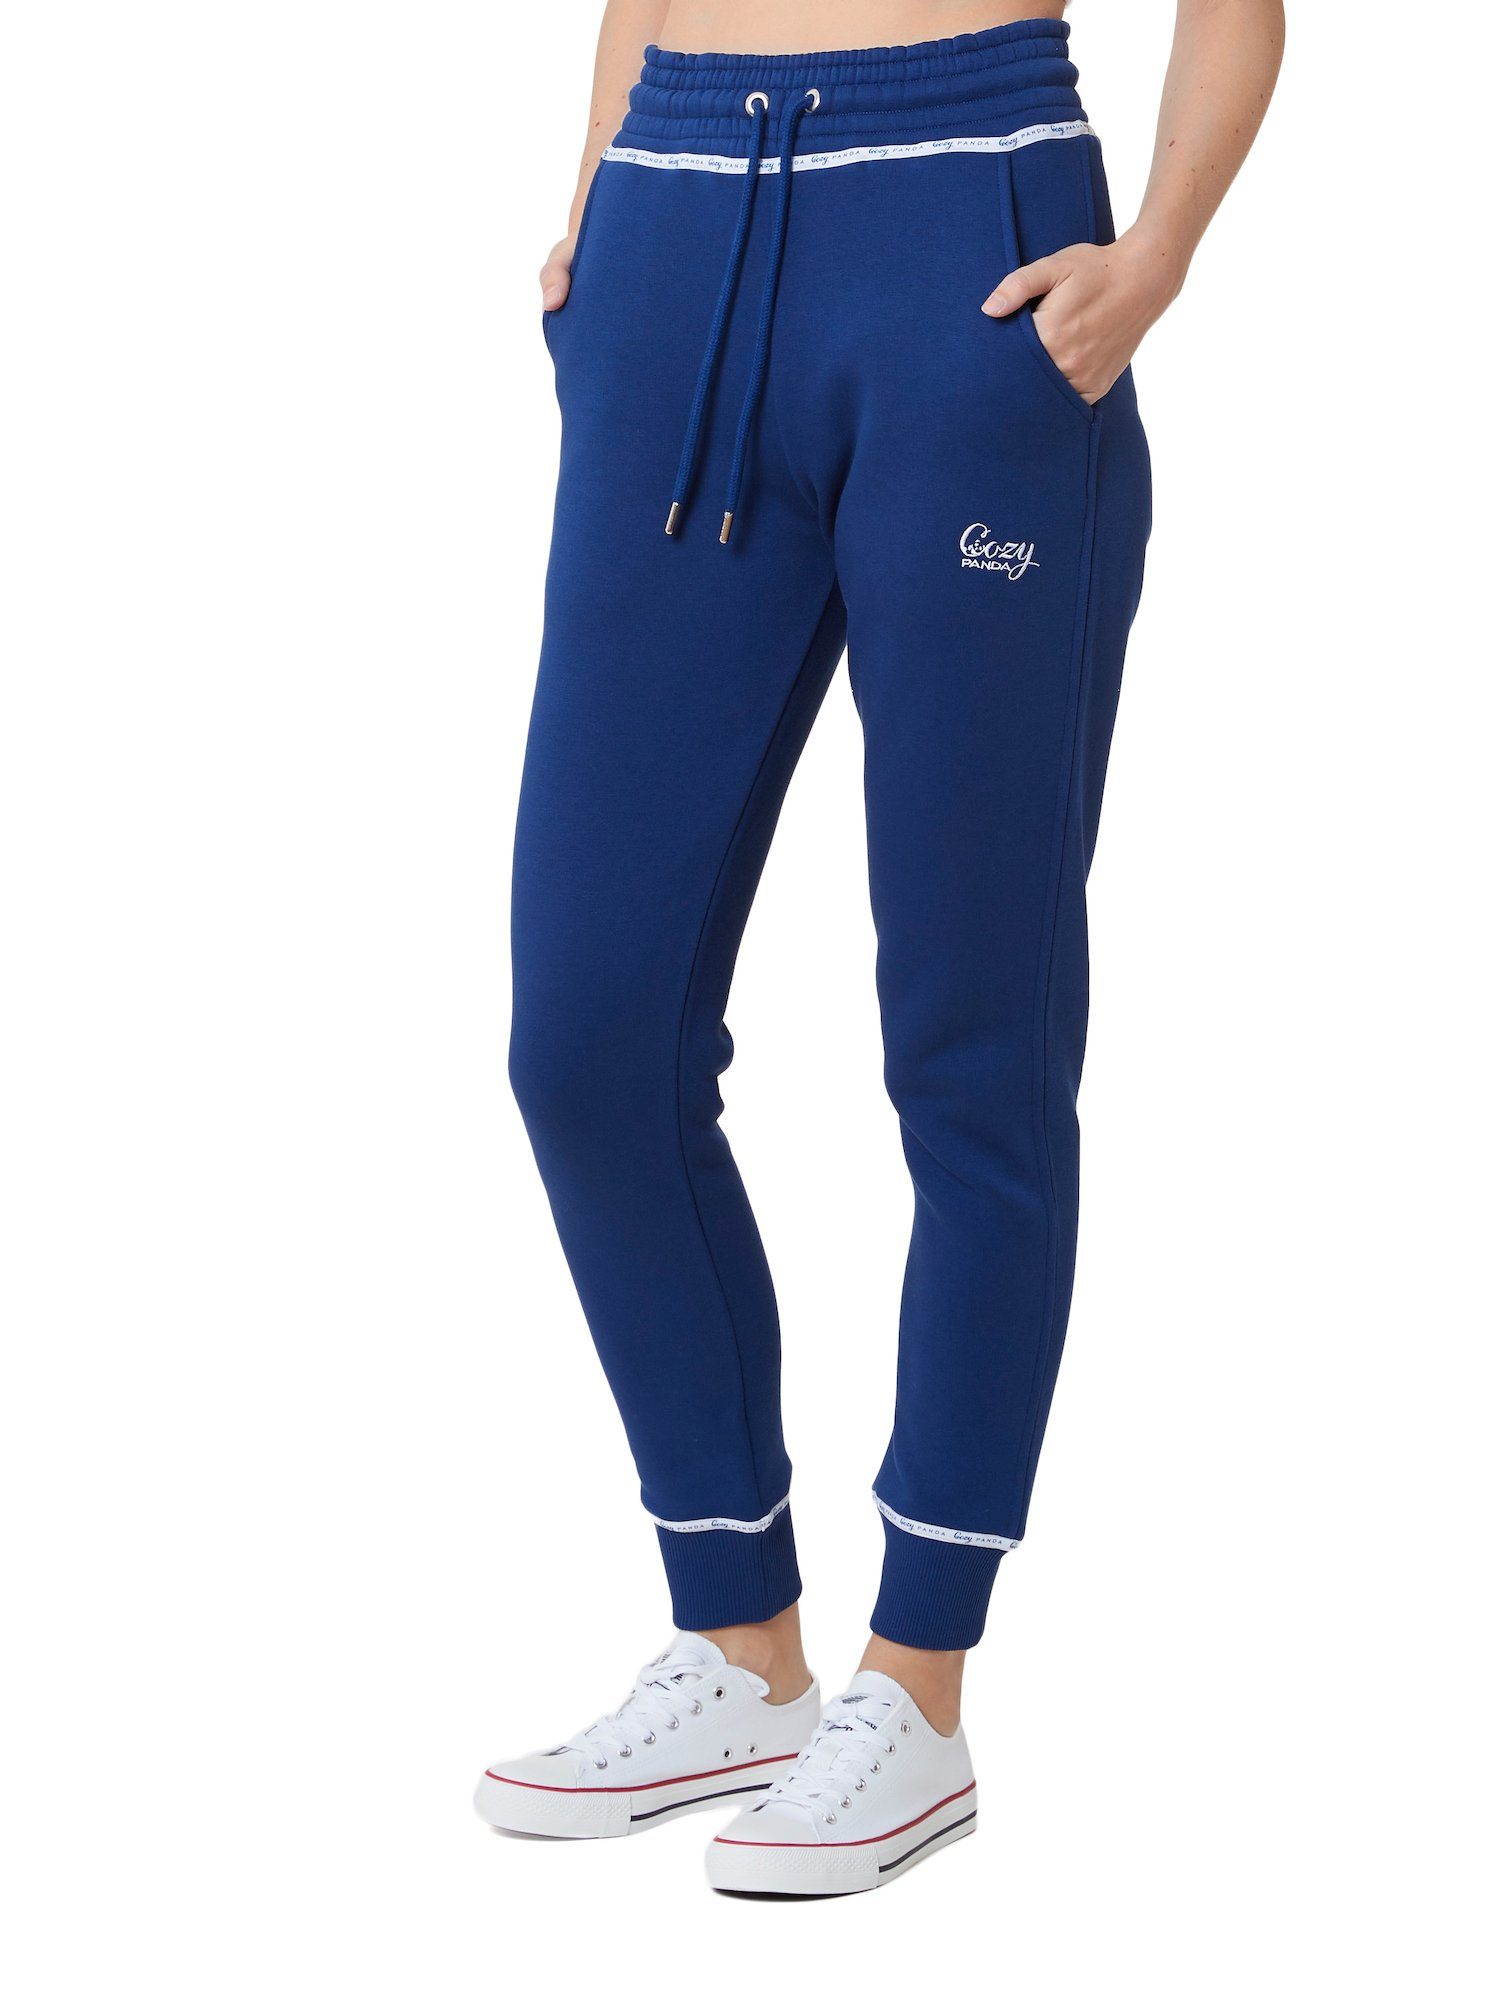 Cozy Panda Jogginghose Soft Jogger Mit Kordelzug und elastischem Bund Blau